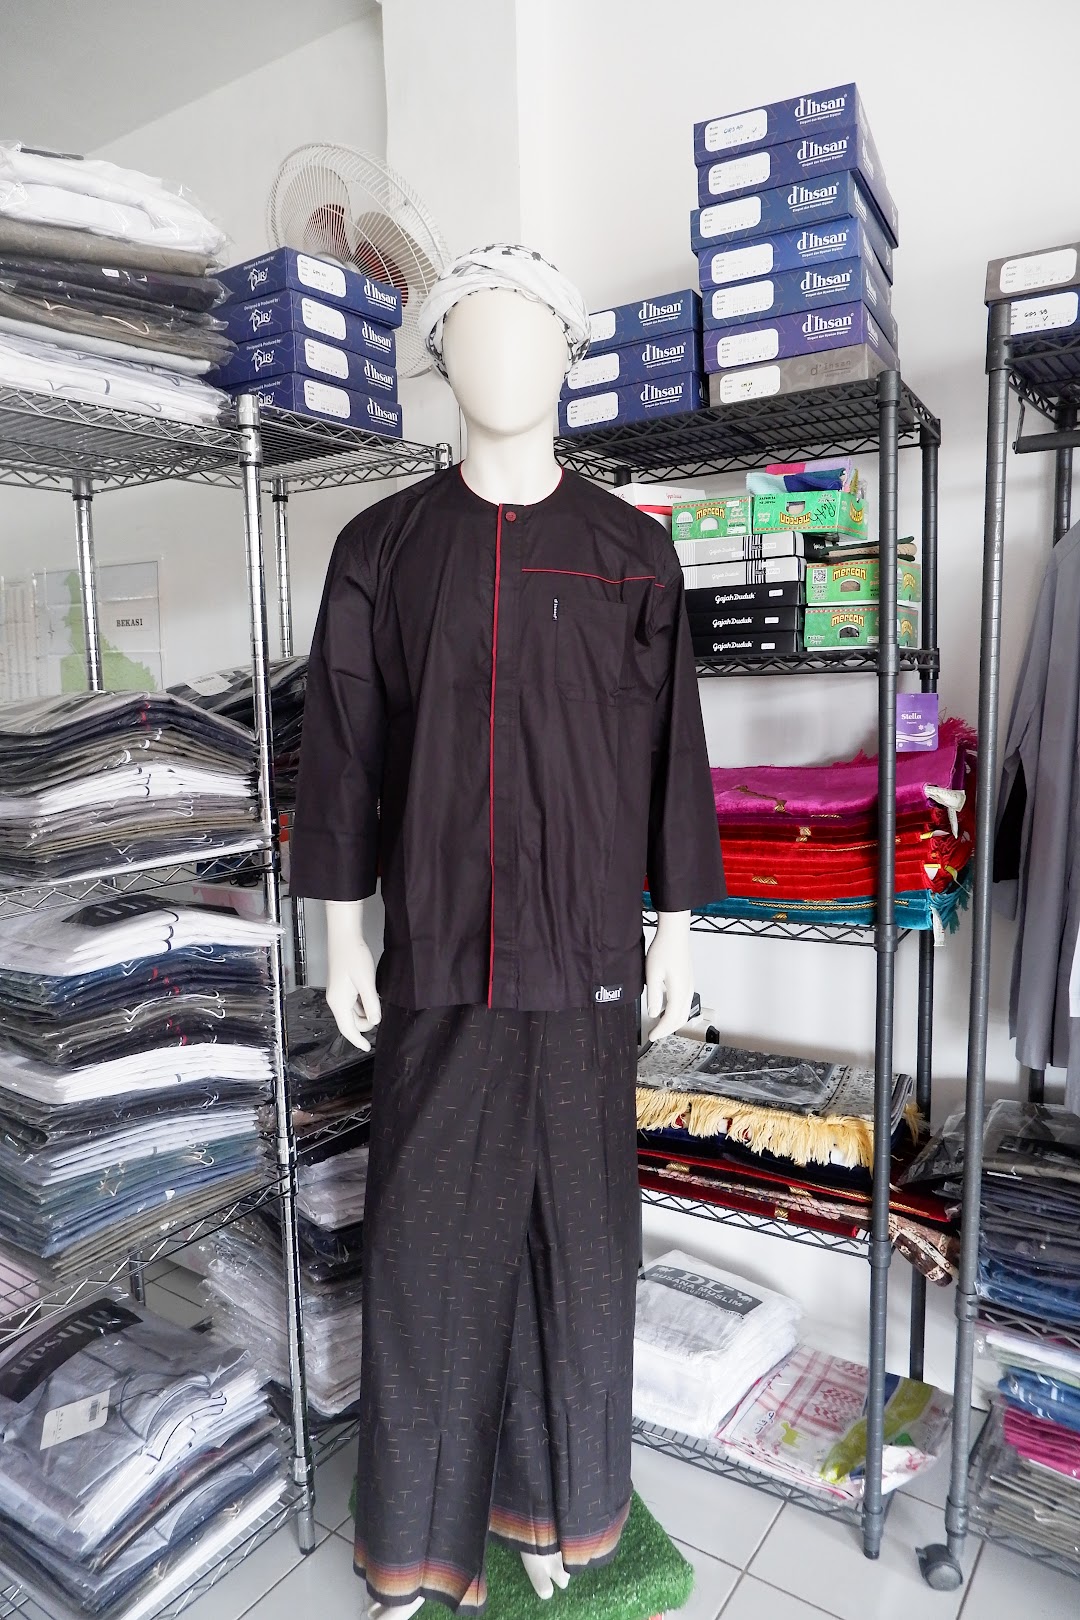 Toko Baju Muslim Koko - Baju Gamis dIhsan Moslem Store